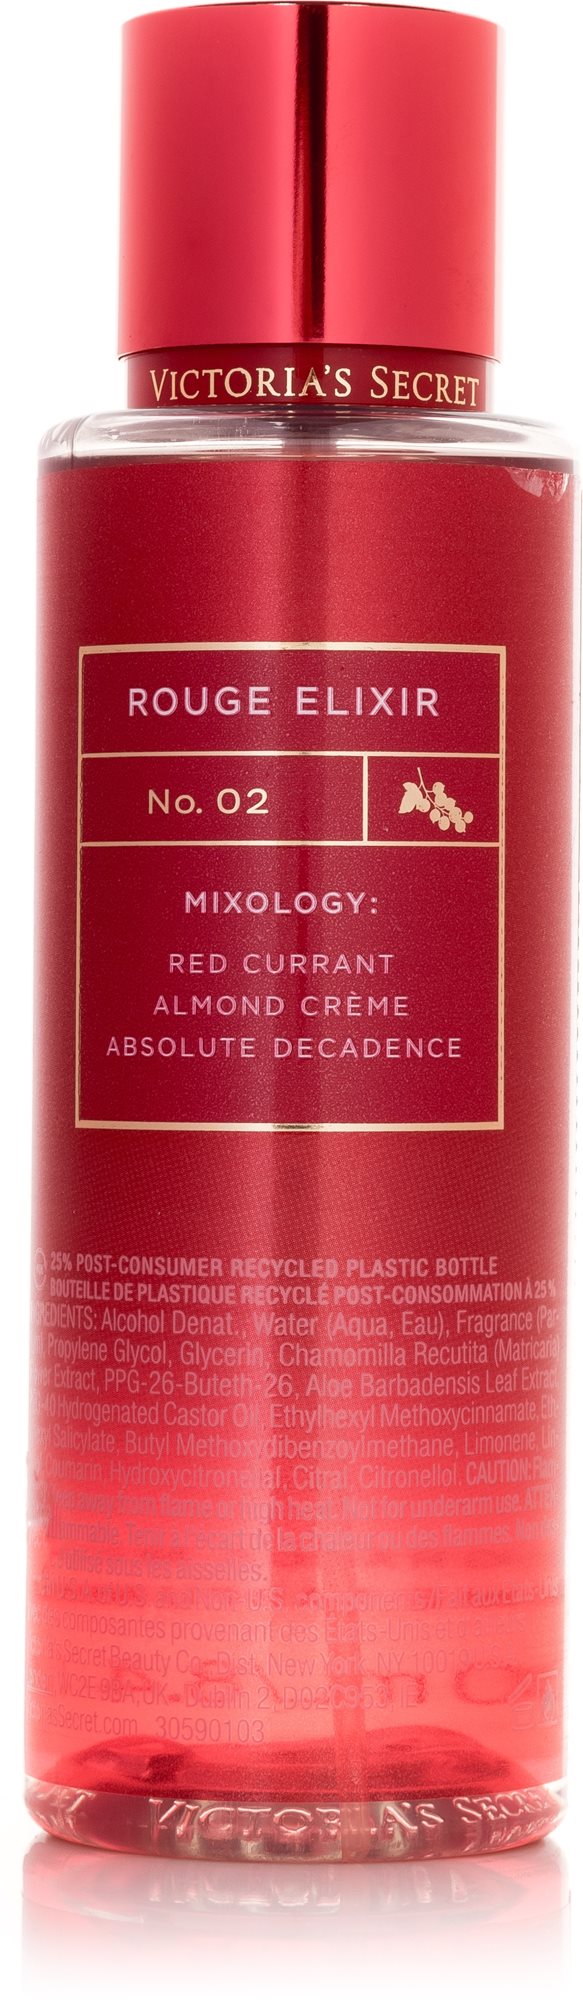 Testpermet VICTORIA'S SECRET Rouge Elixir No. 2, 250 ml